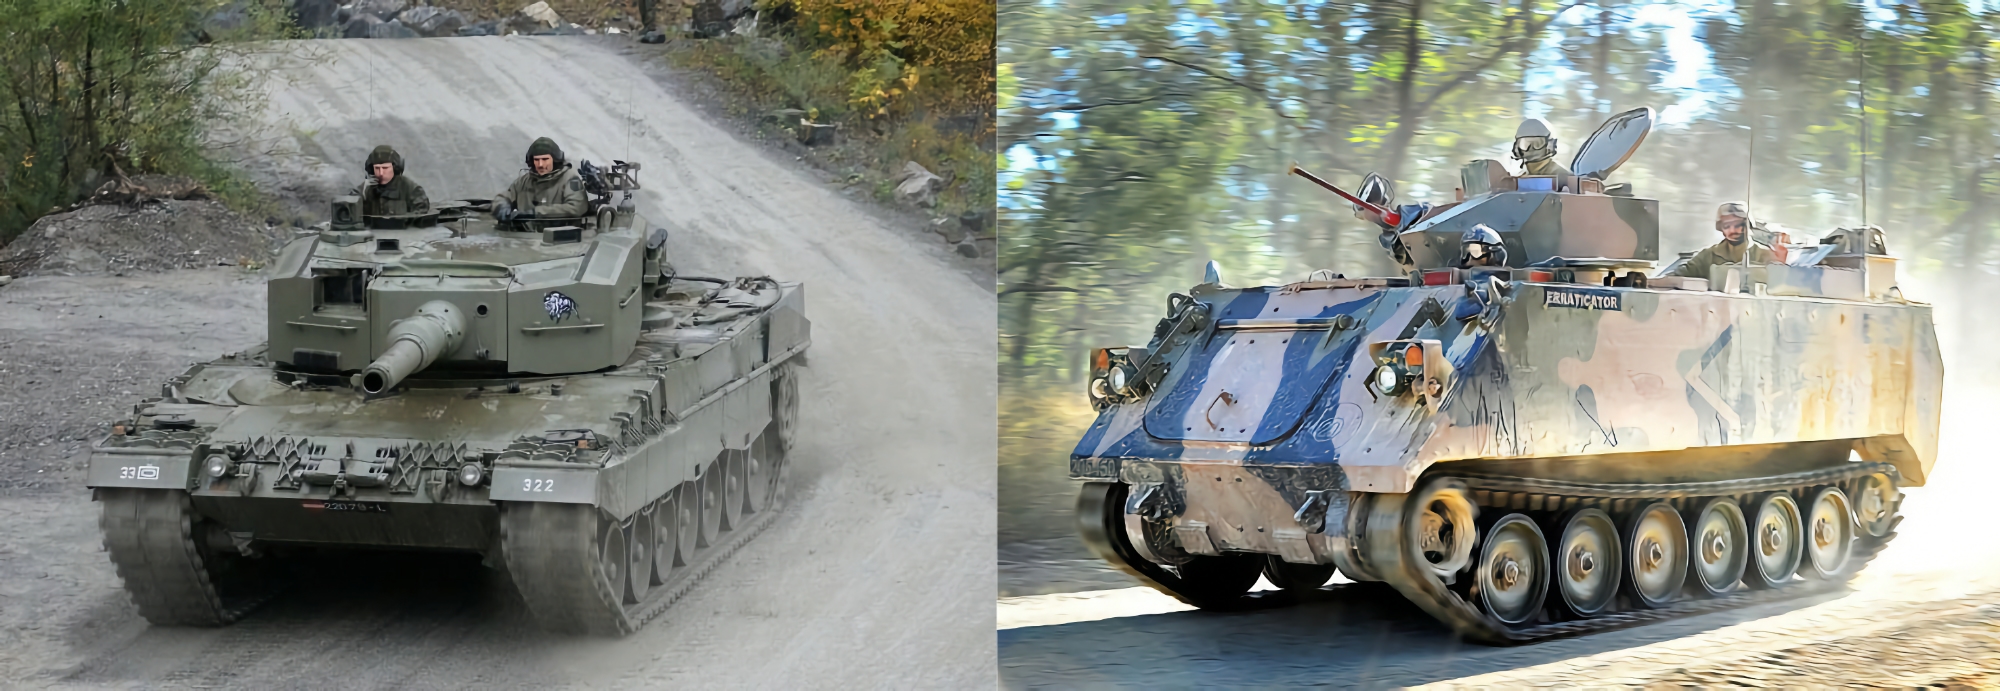 Spanien beginnt mit der Lieferung von Leopard 2A4-Panzern und gepanzerten Mannschaftstransportwagen M113 an die Ukraine